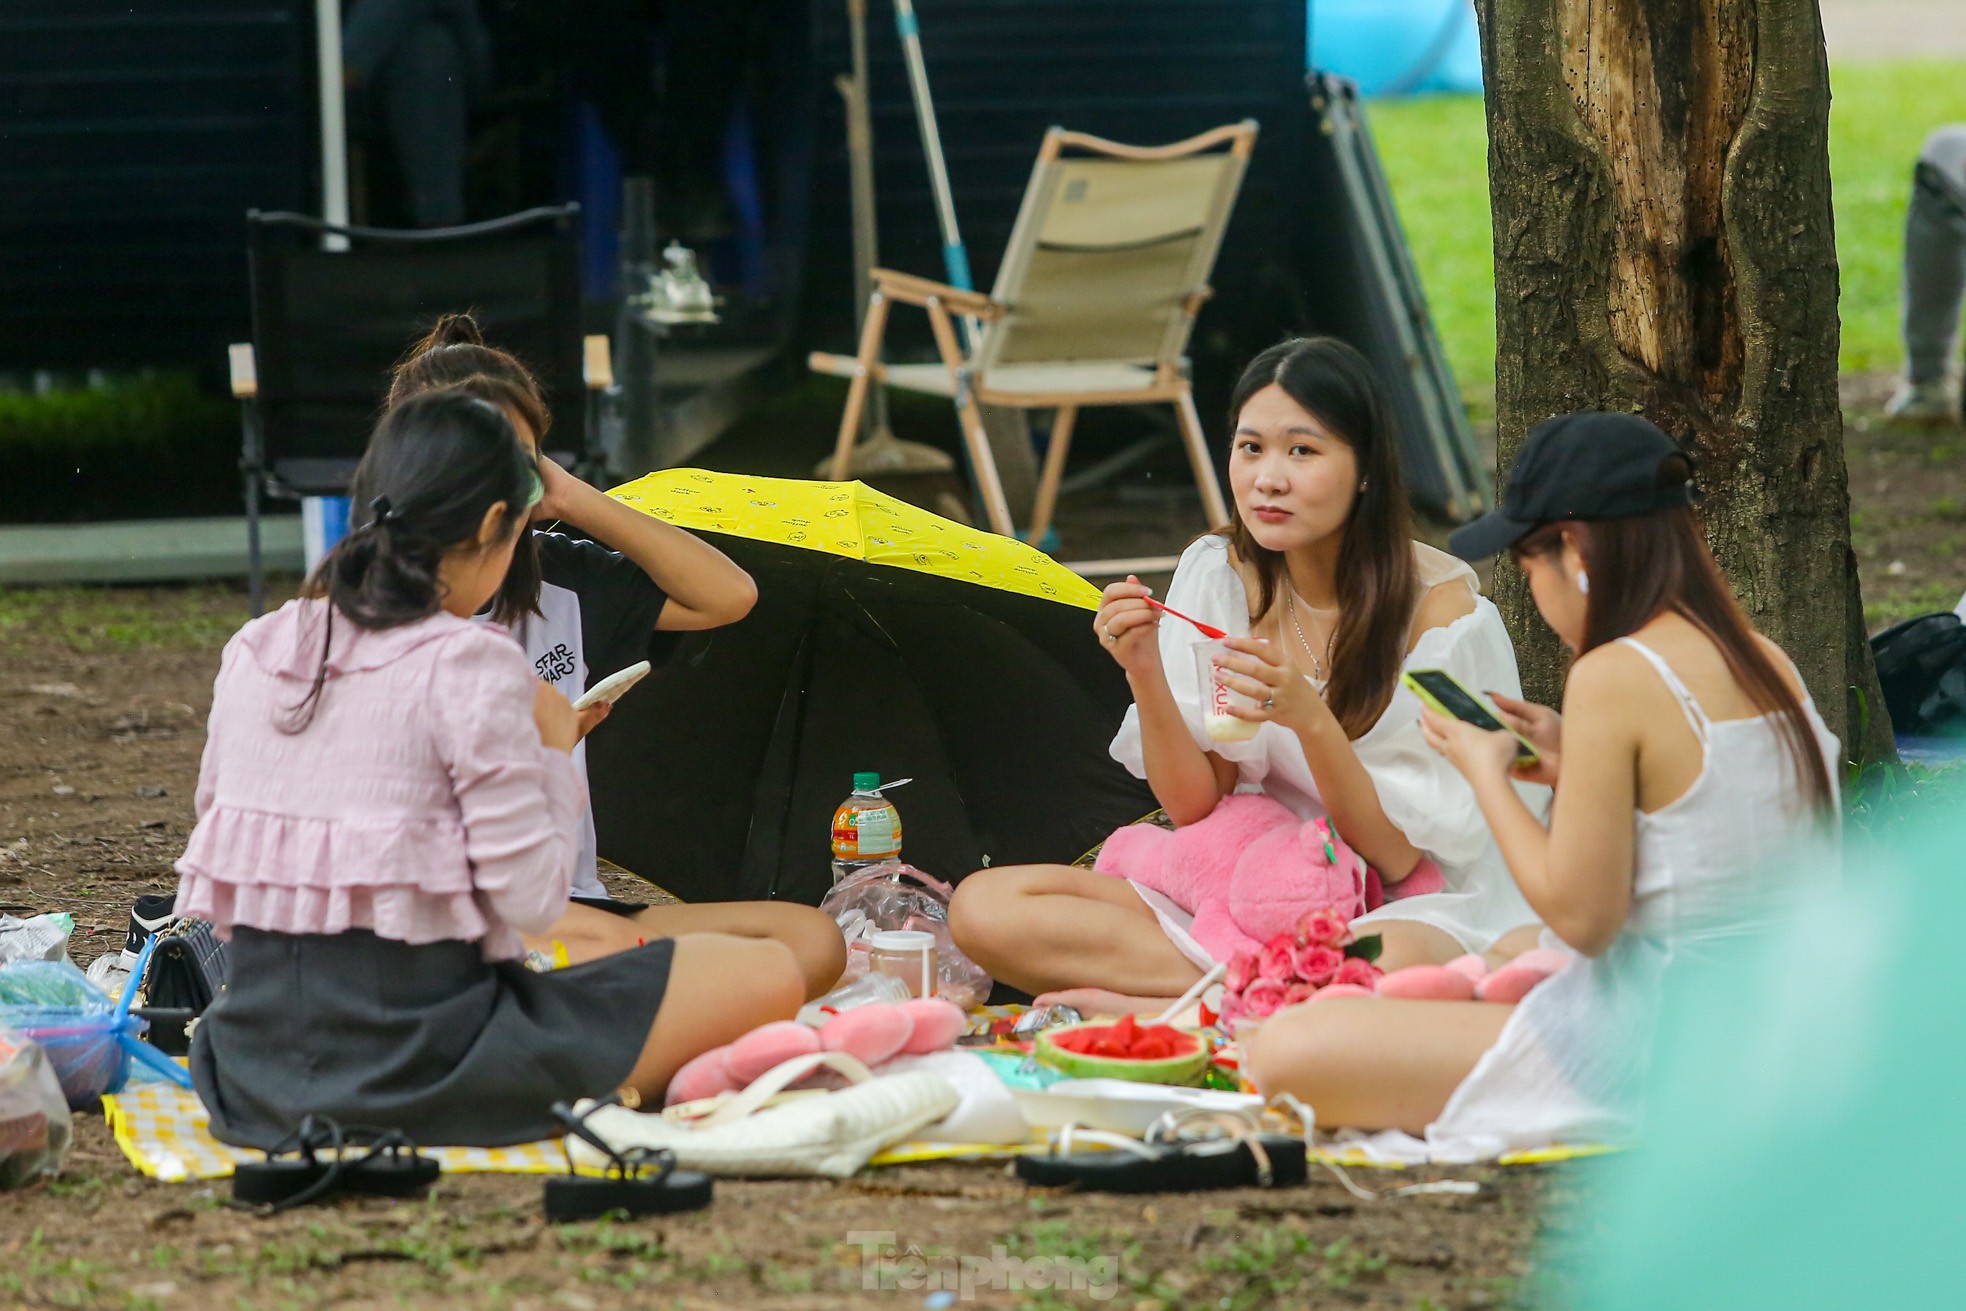 Hàng nghìn người đổ về công viên Yên Sở cắm trại trong ngày nghỉ lễ - Ảnh 9.